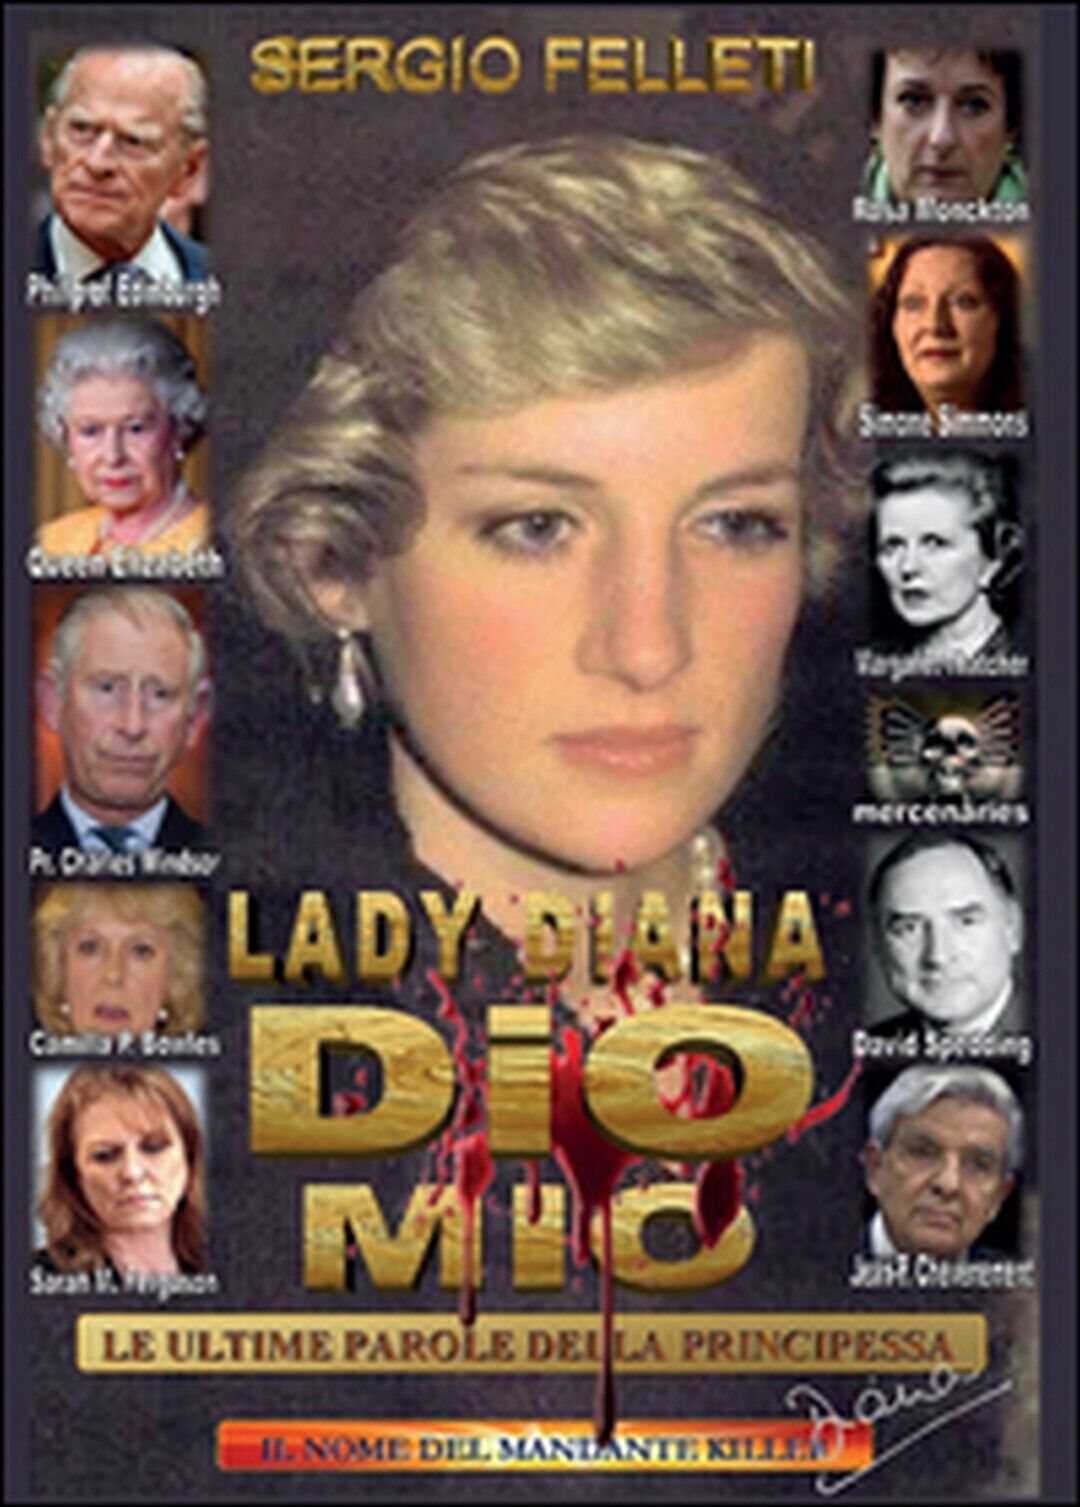 Lady Diana - Dio mio - Le ultime parole della principessa  di Sergio Felleti